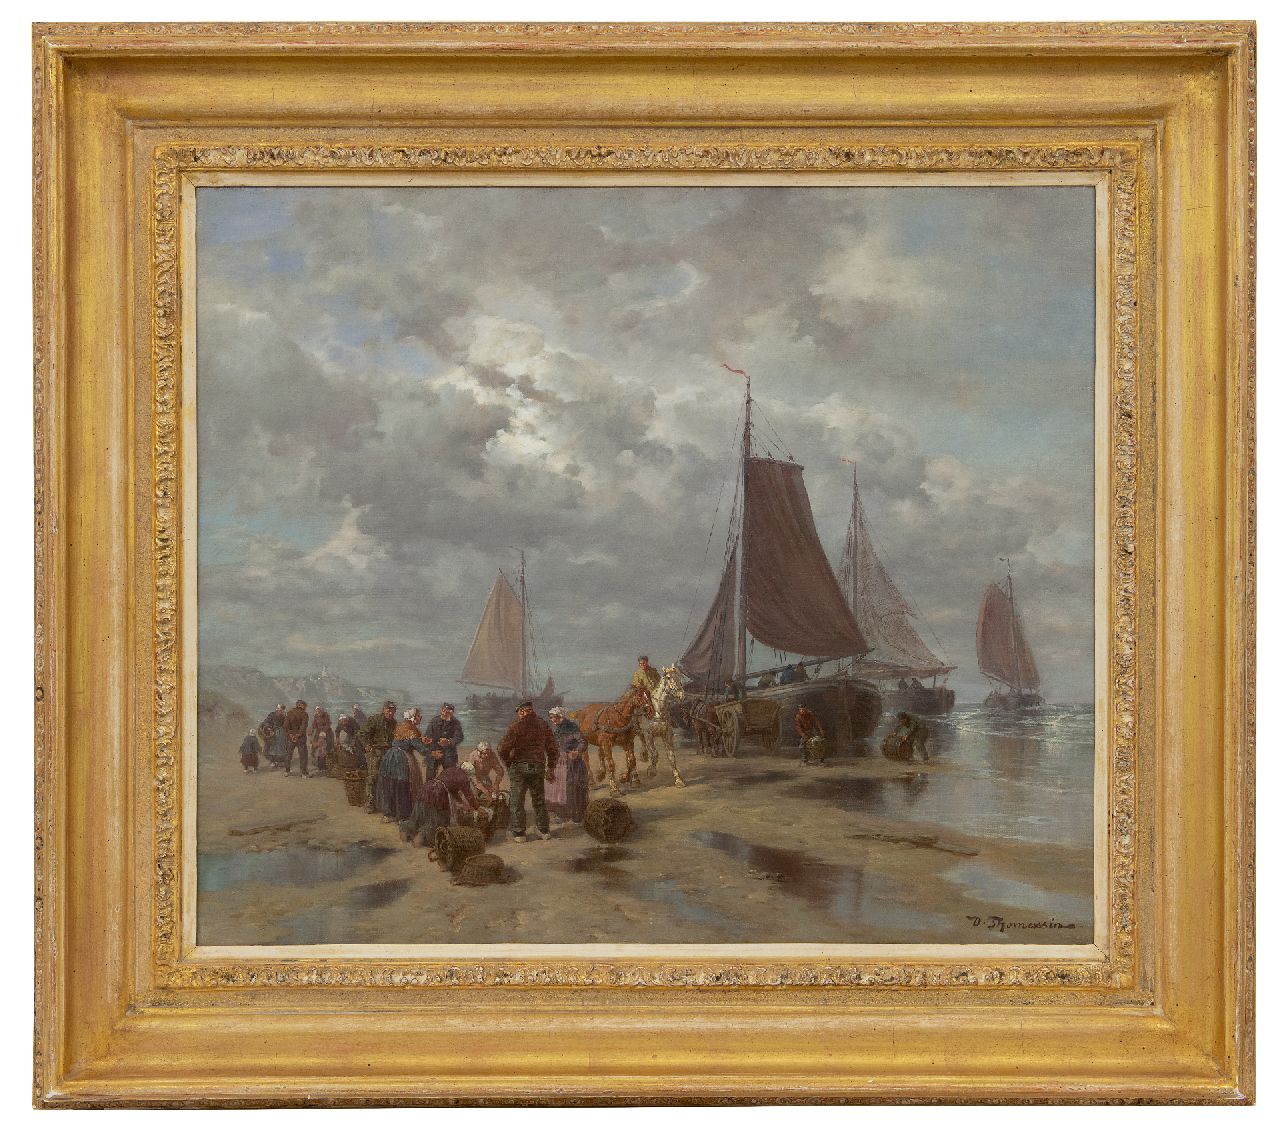 Thomassin D.  | Désiré Thomassin | Schilderijen te koop aangeboden | Visverkoop op het strand, olieverf op doek 50,5 x 60,5 cm, gesigneerd rechtsonder